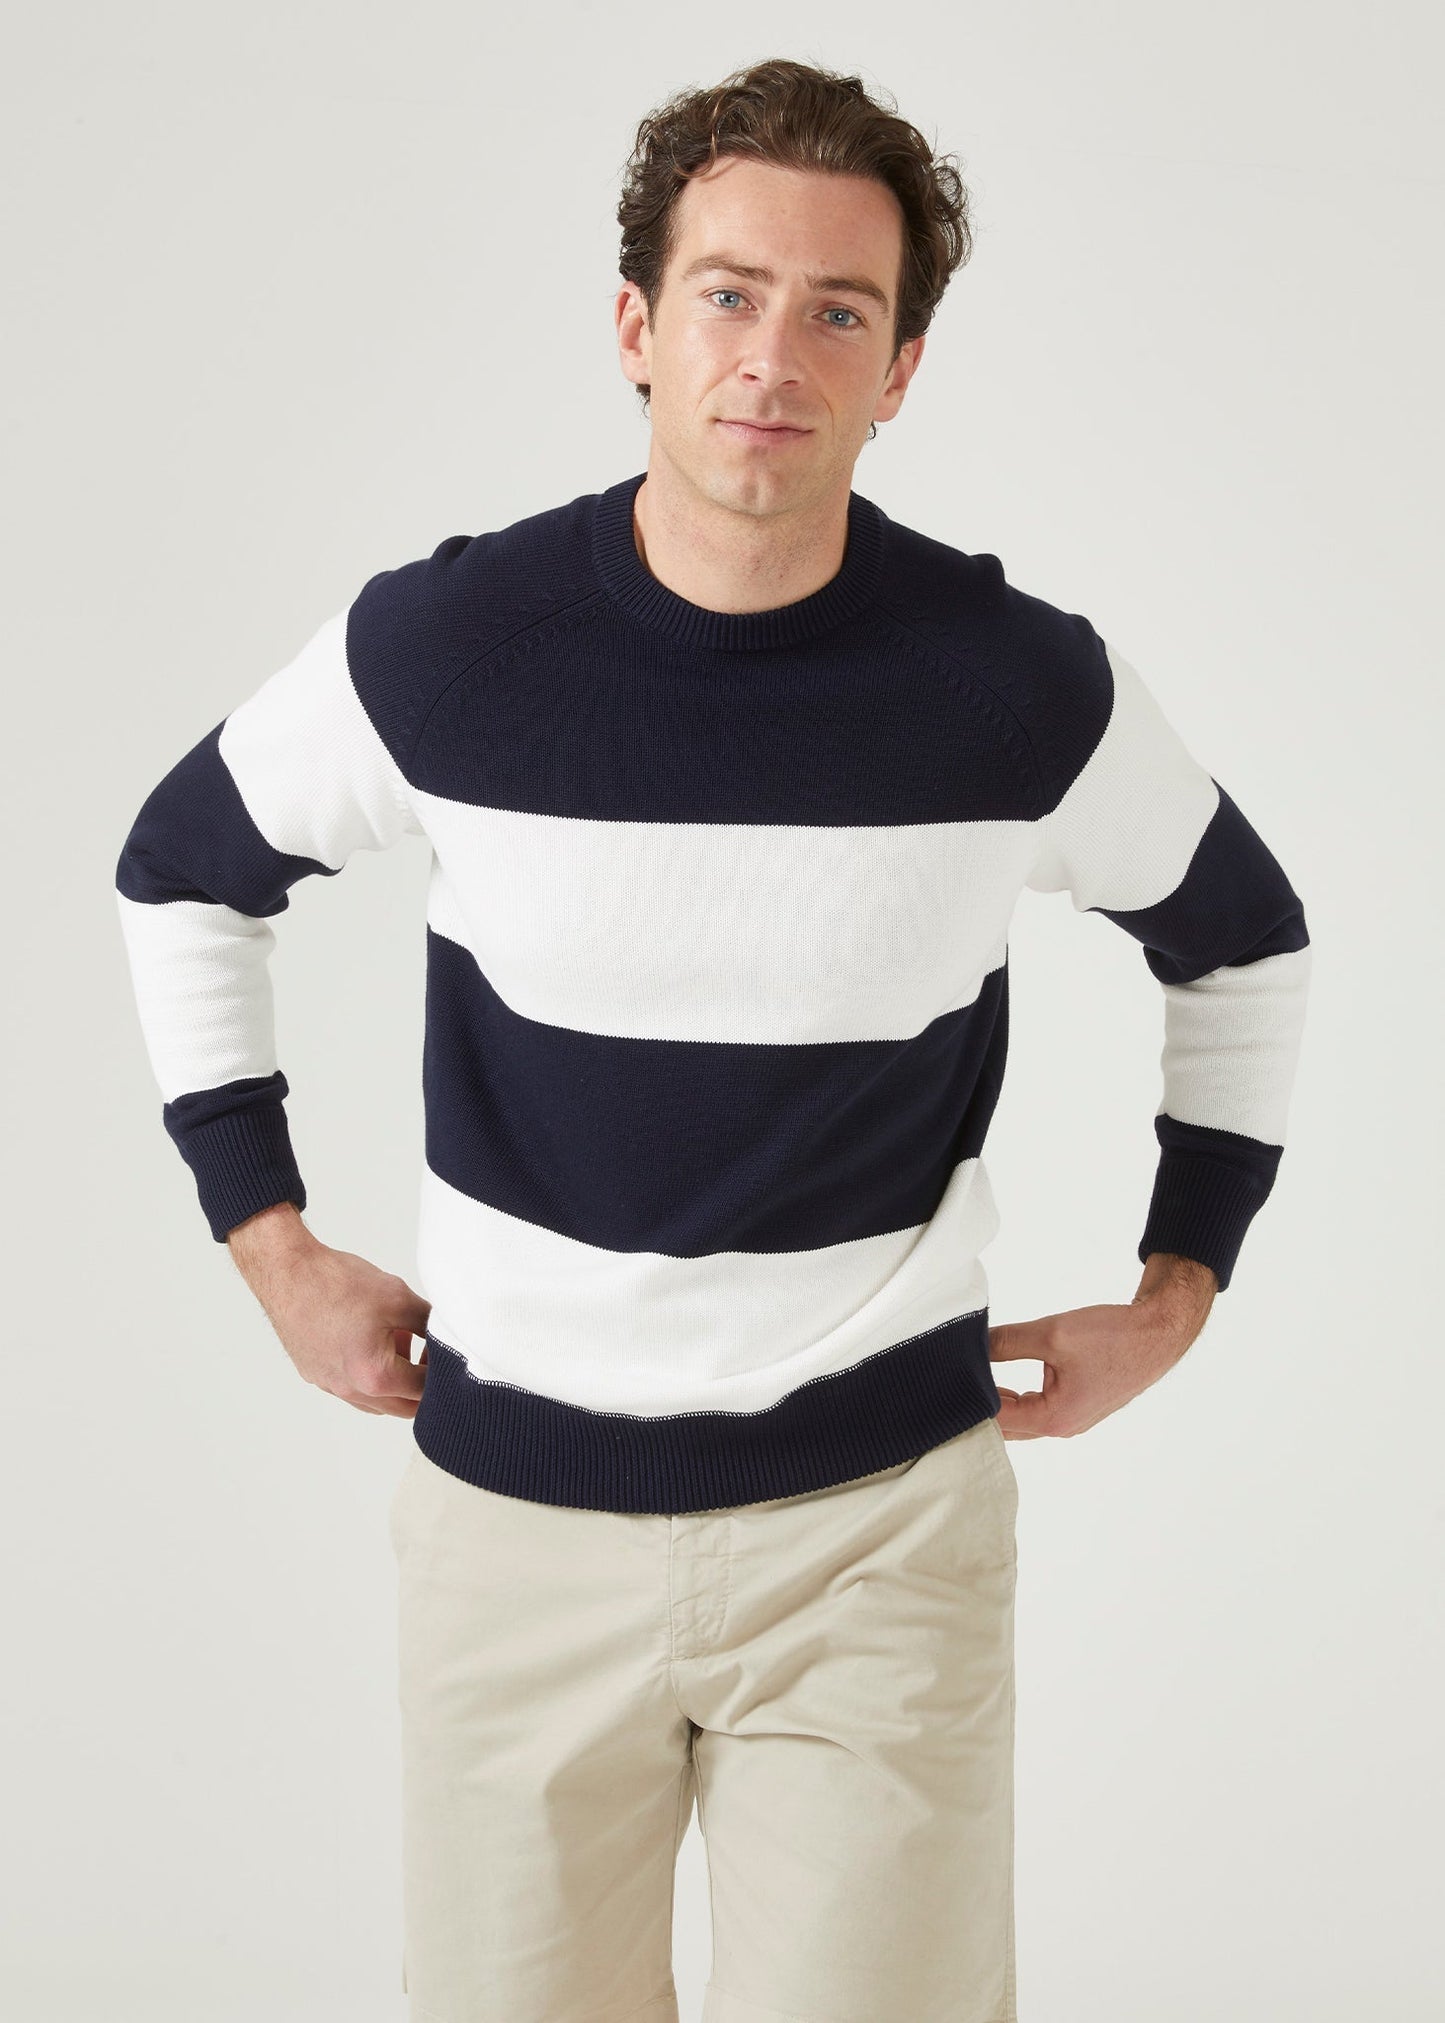 Wide stripe cotton jumper with a crew neck in dark navy & ecru.